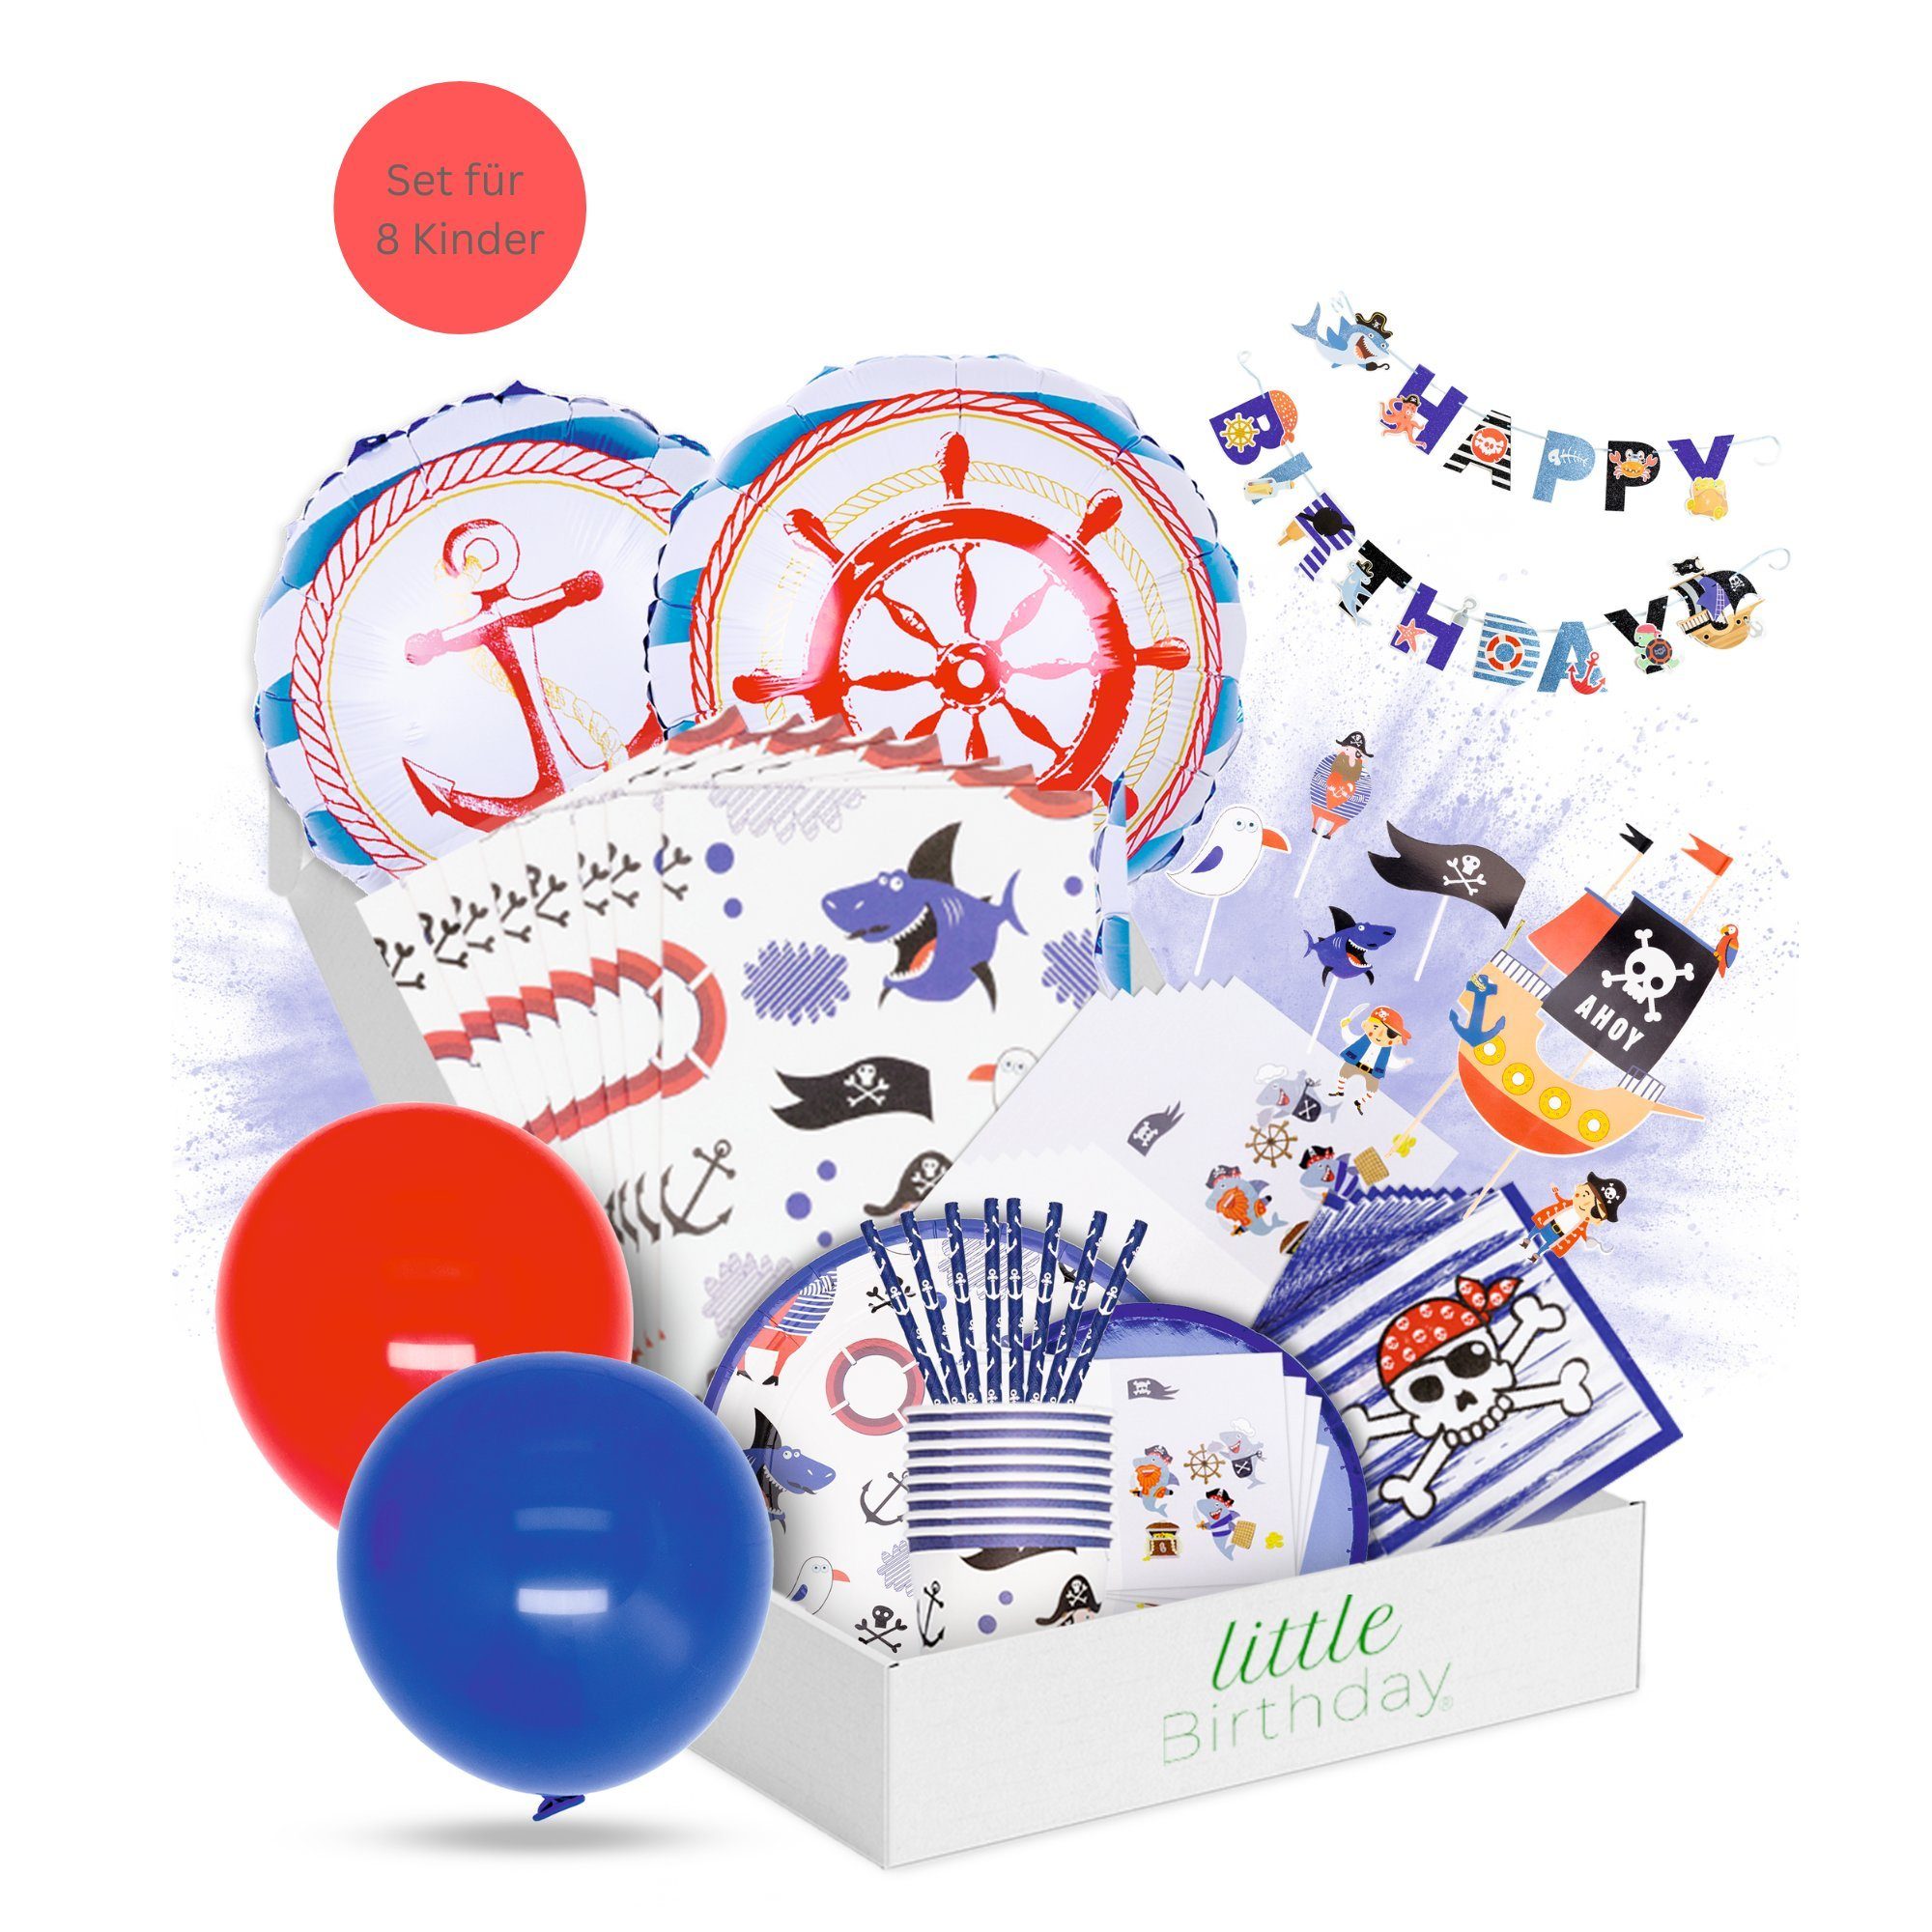 little Birthday Papierdekoration little Birthday - Piraten Mottobox für Kindergeburtstag, für 8 Kinder, 117 Teile aus einem Set